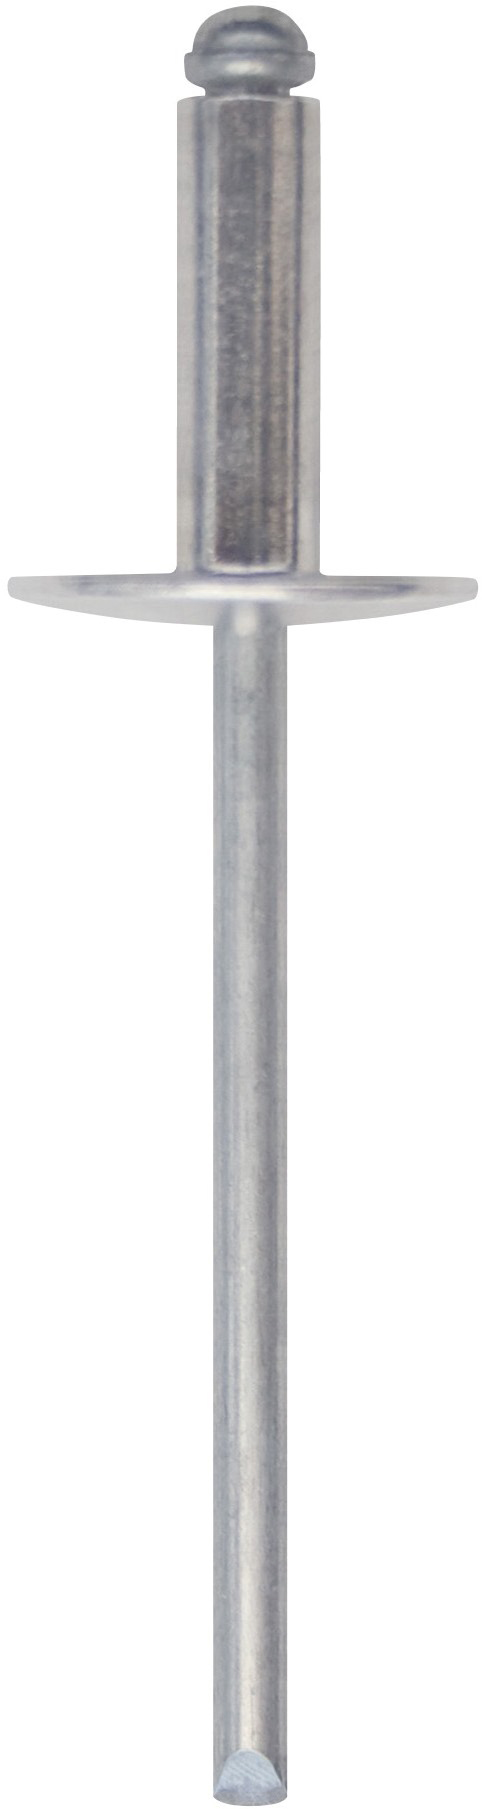 Cod. 0300104001300 - RIVEX Rivetto in alluminio con testa larga